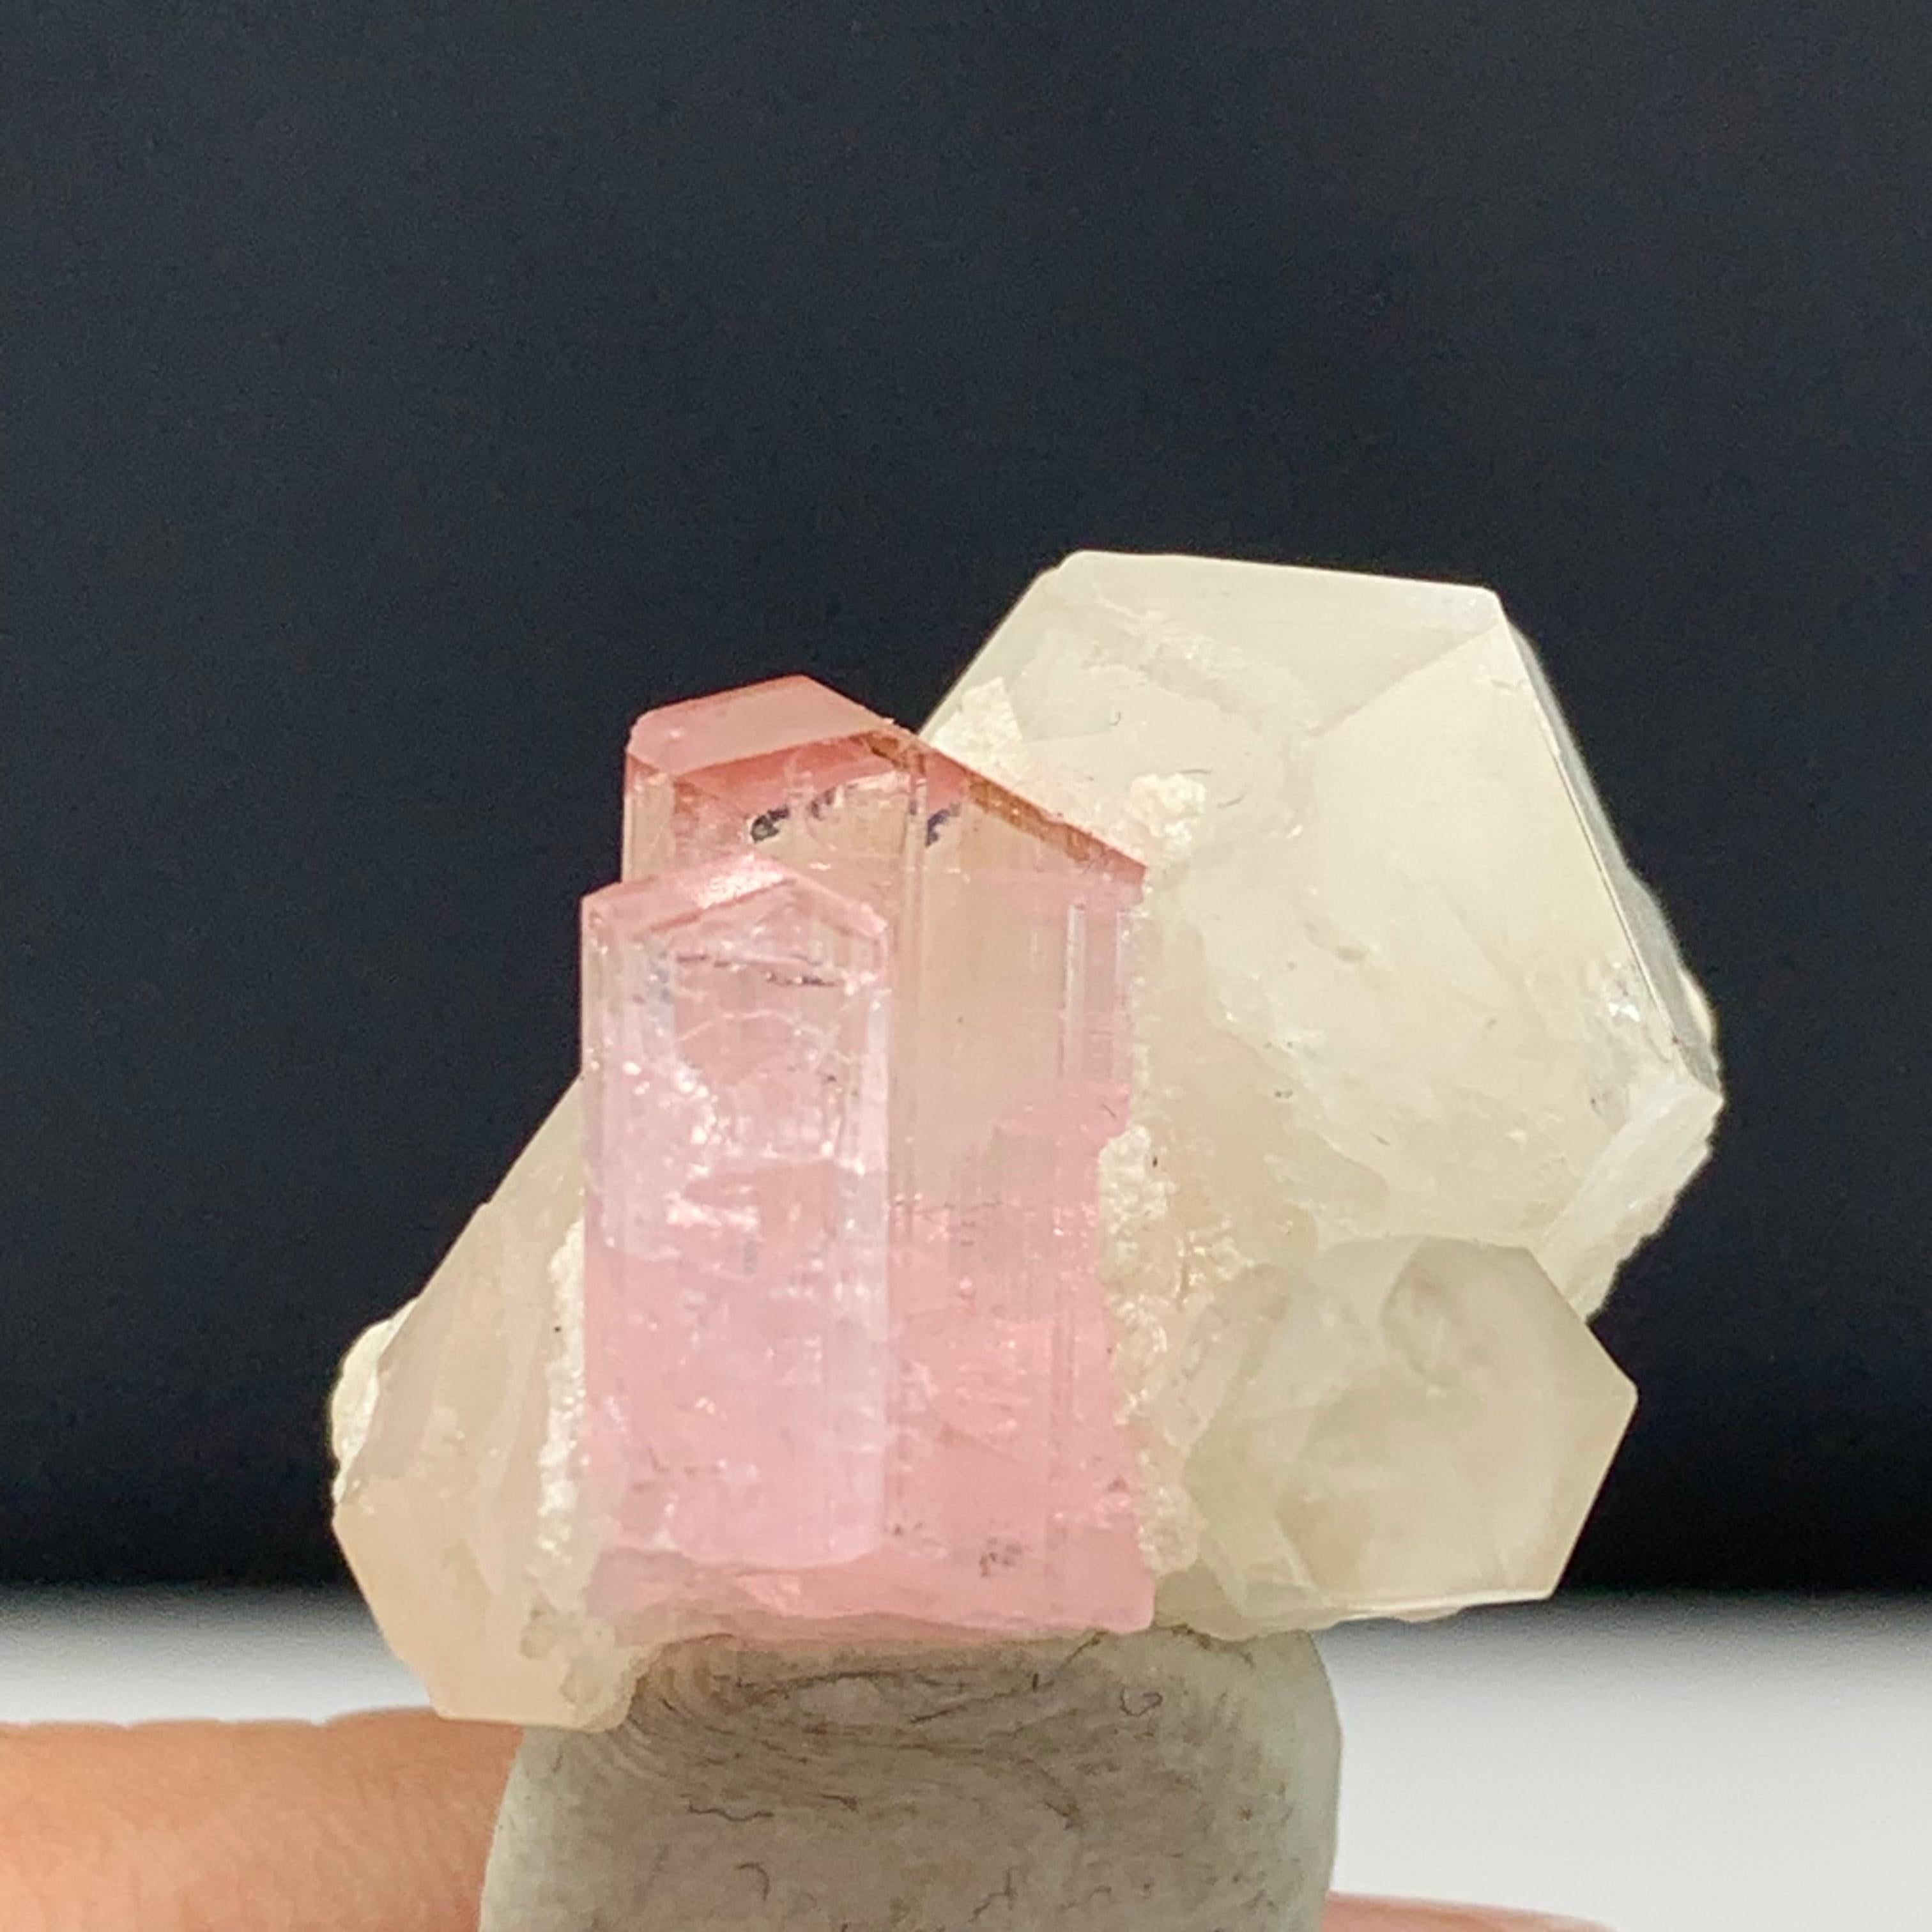  Mignon spécimen de tourmaline rose avec quartz de Kunar, Afghanistan 
Poids : 35 carats 
Dimension : 1.6 x 1.8 x 2.3 Cm 
Origine : Kunar,  Afghanistan 

La tourmaline est un groupe minéral de silicate cristallin dans lequel le bore est composé